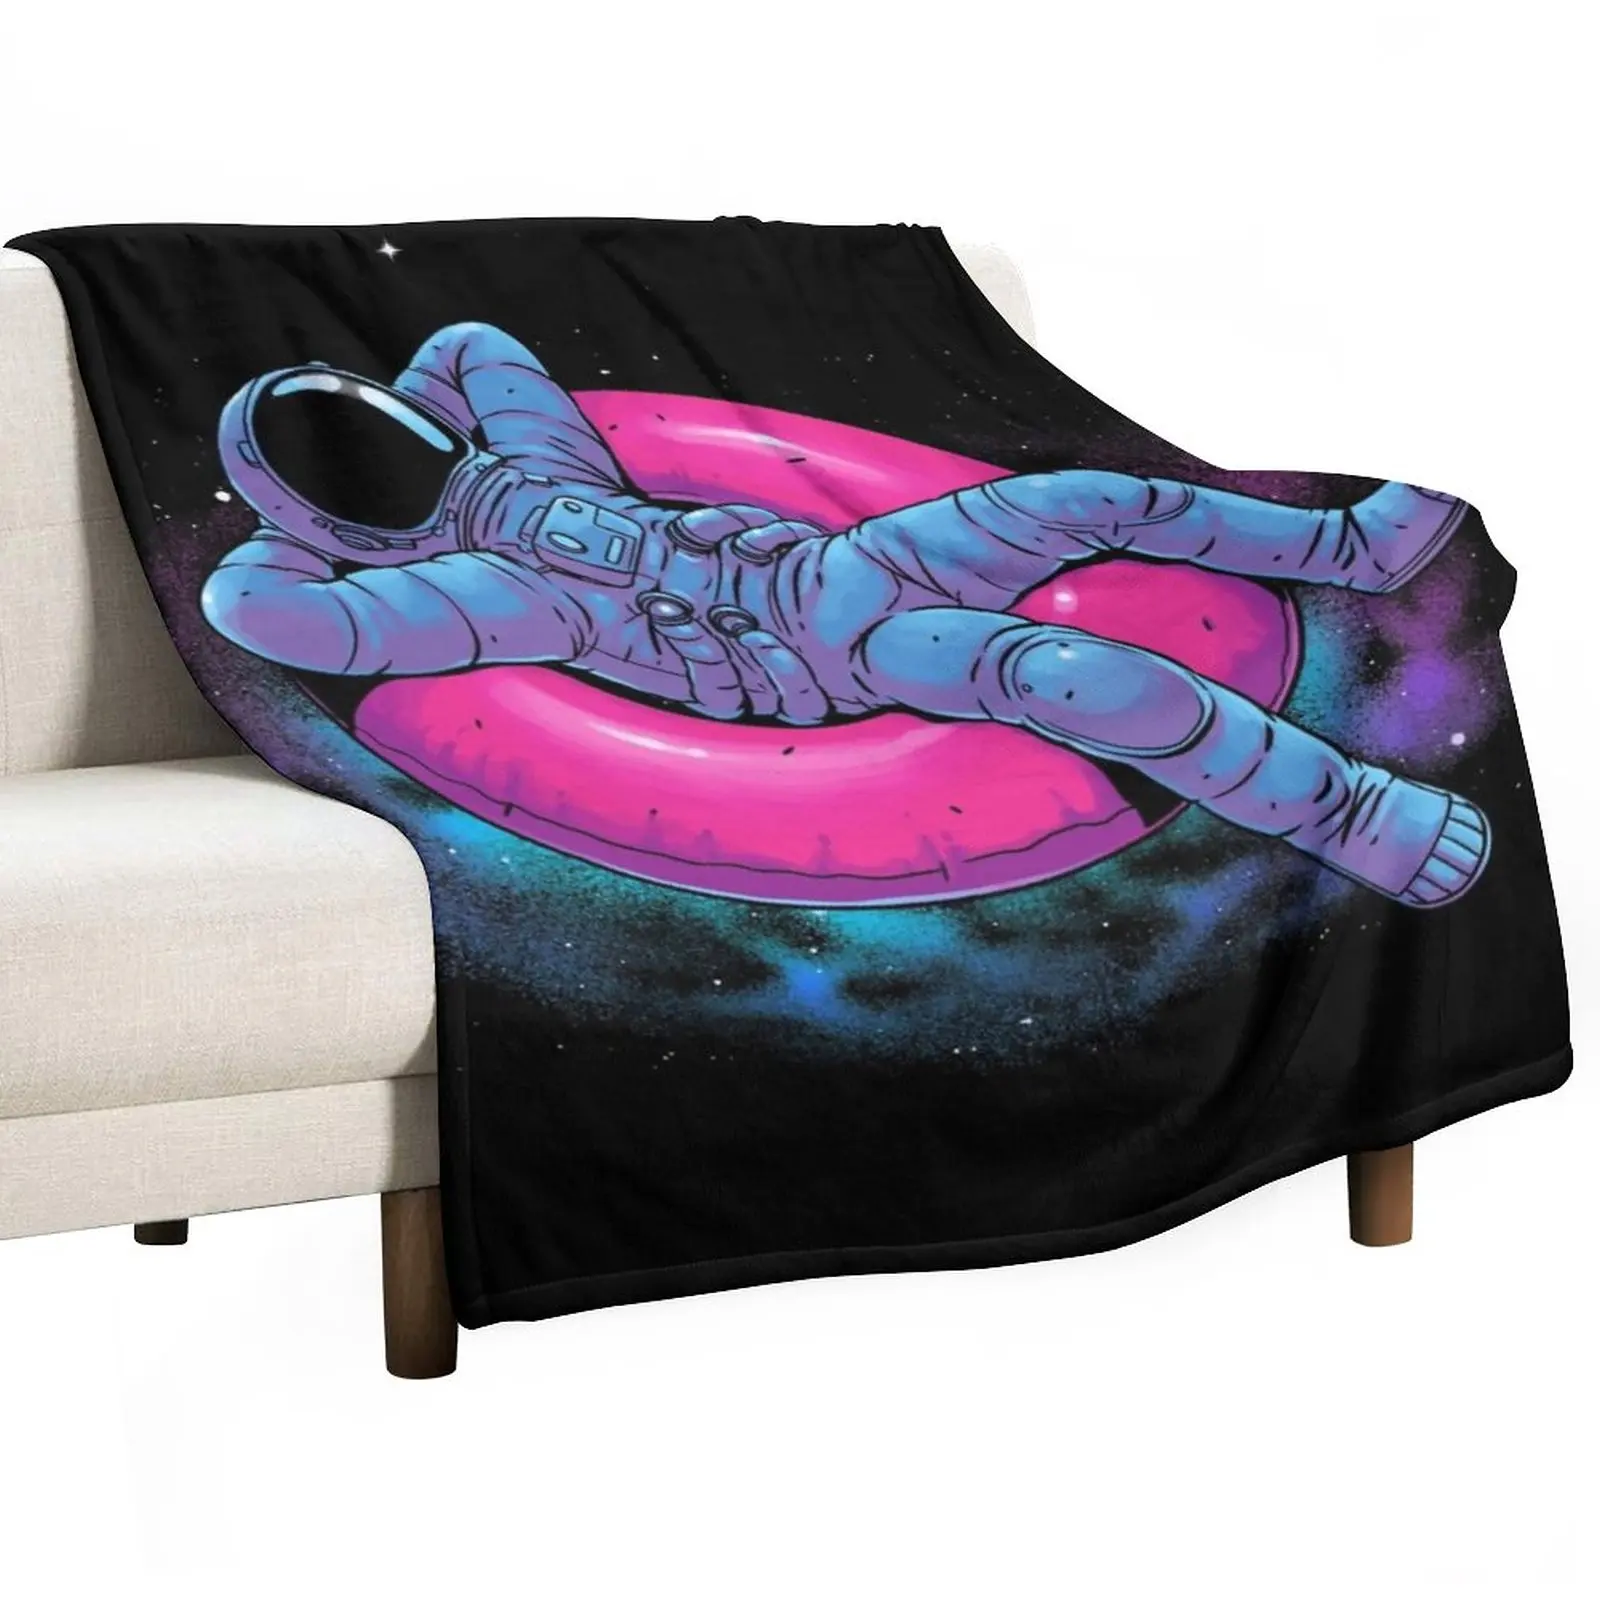 Плавающее одеяло мечты, Роскошное Утолщенное Одеяло, Дорожное одеяло, Постельное белье для среды,